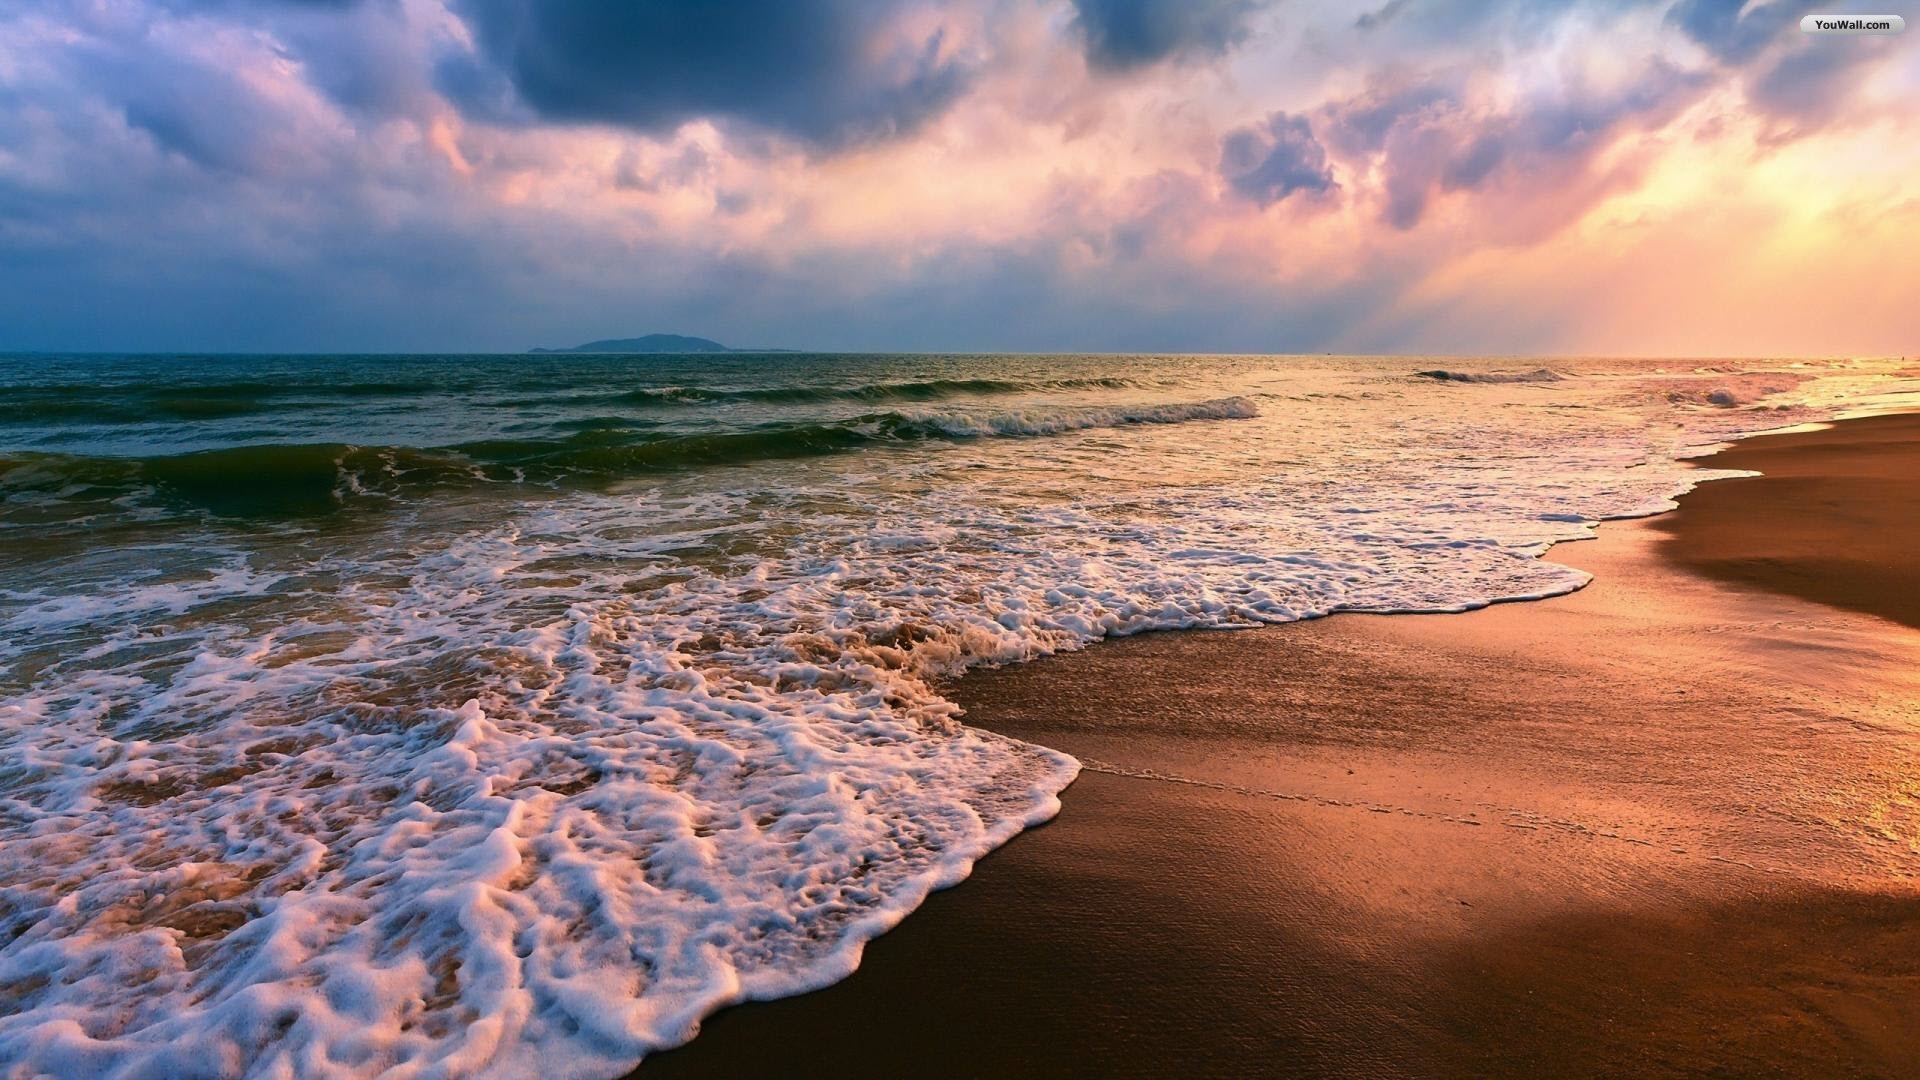 Beach Sunset Wallpaper Desktop Image Of